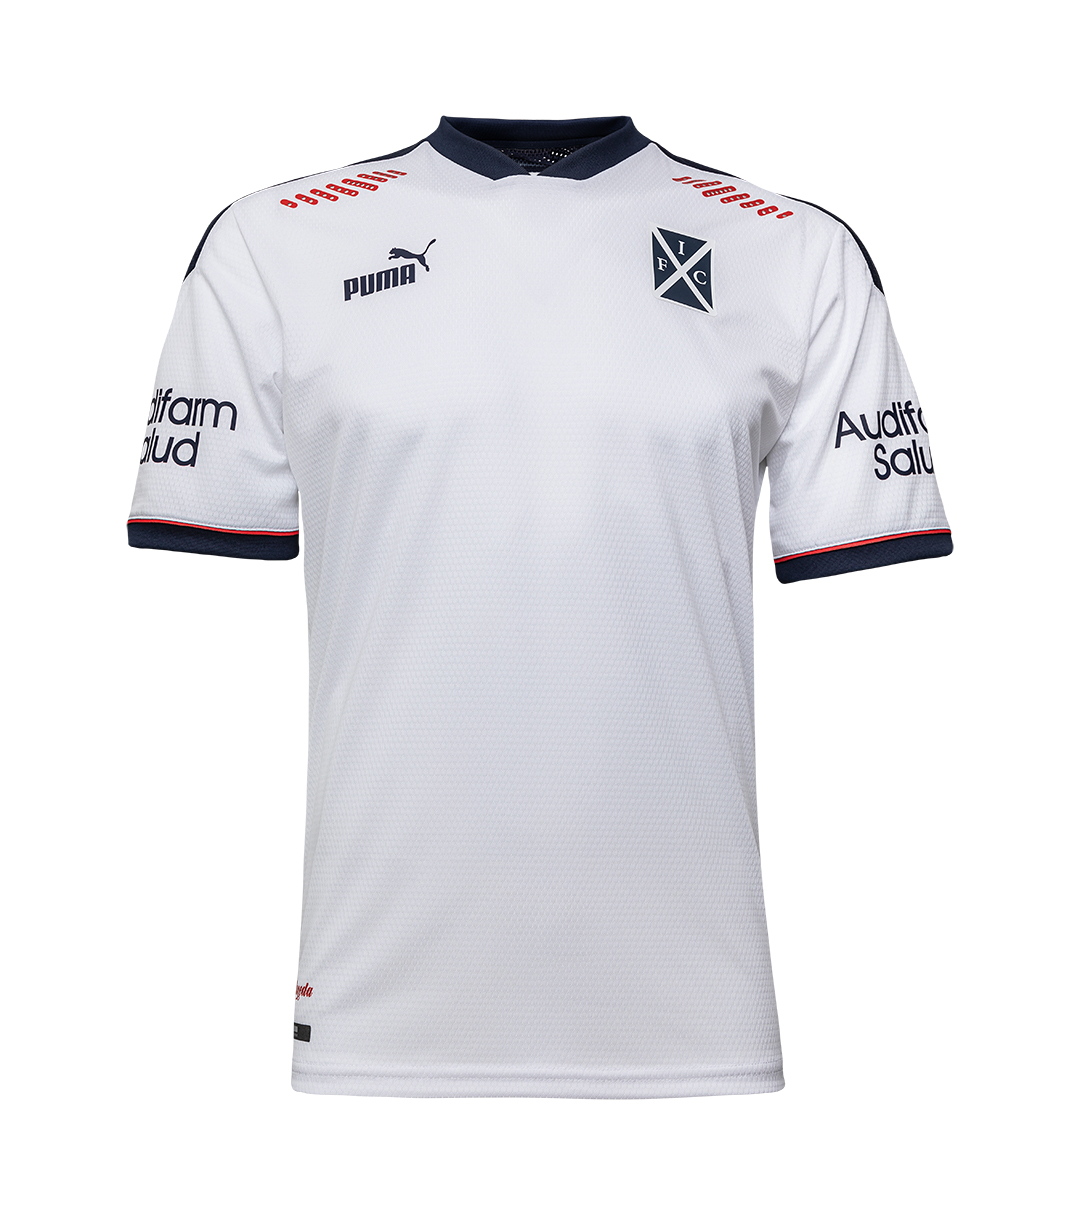 Camisetas PUMA de Independiente 2021 Alternativa